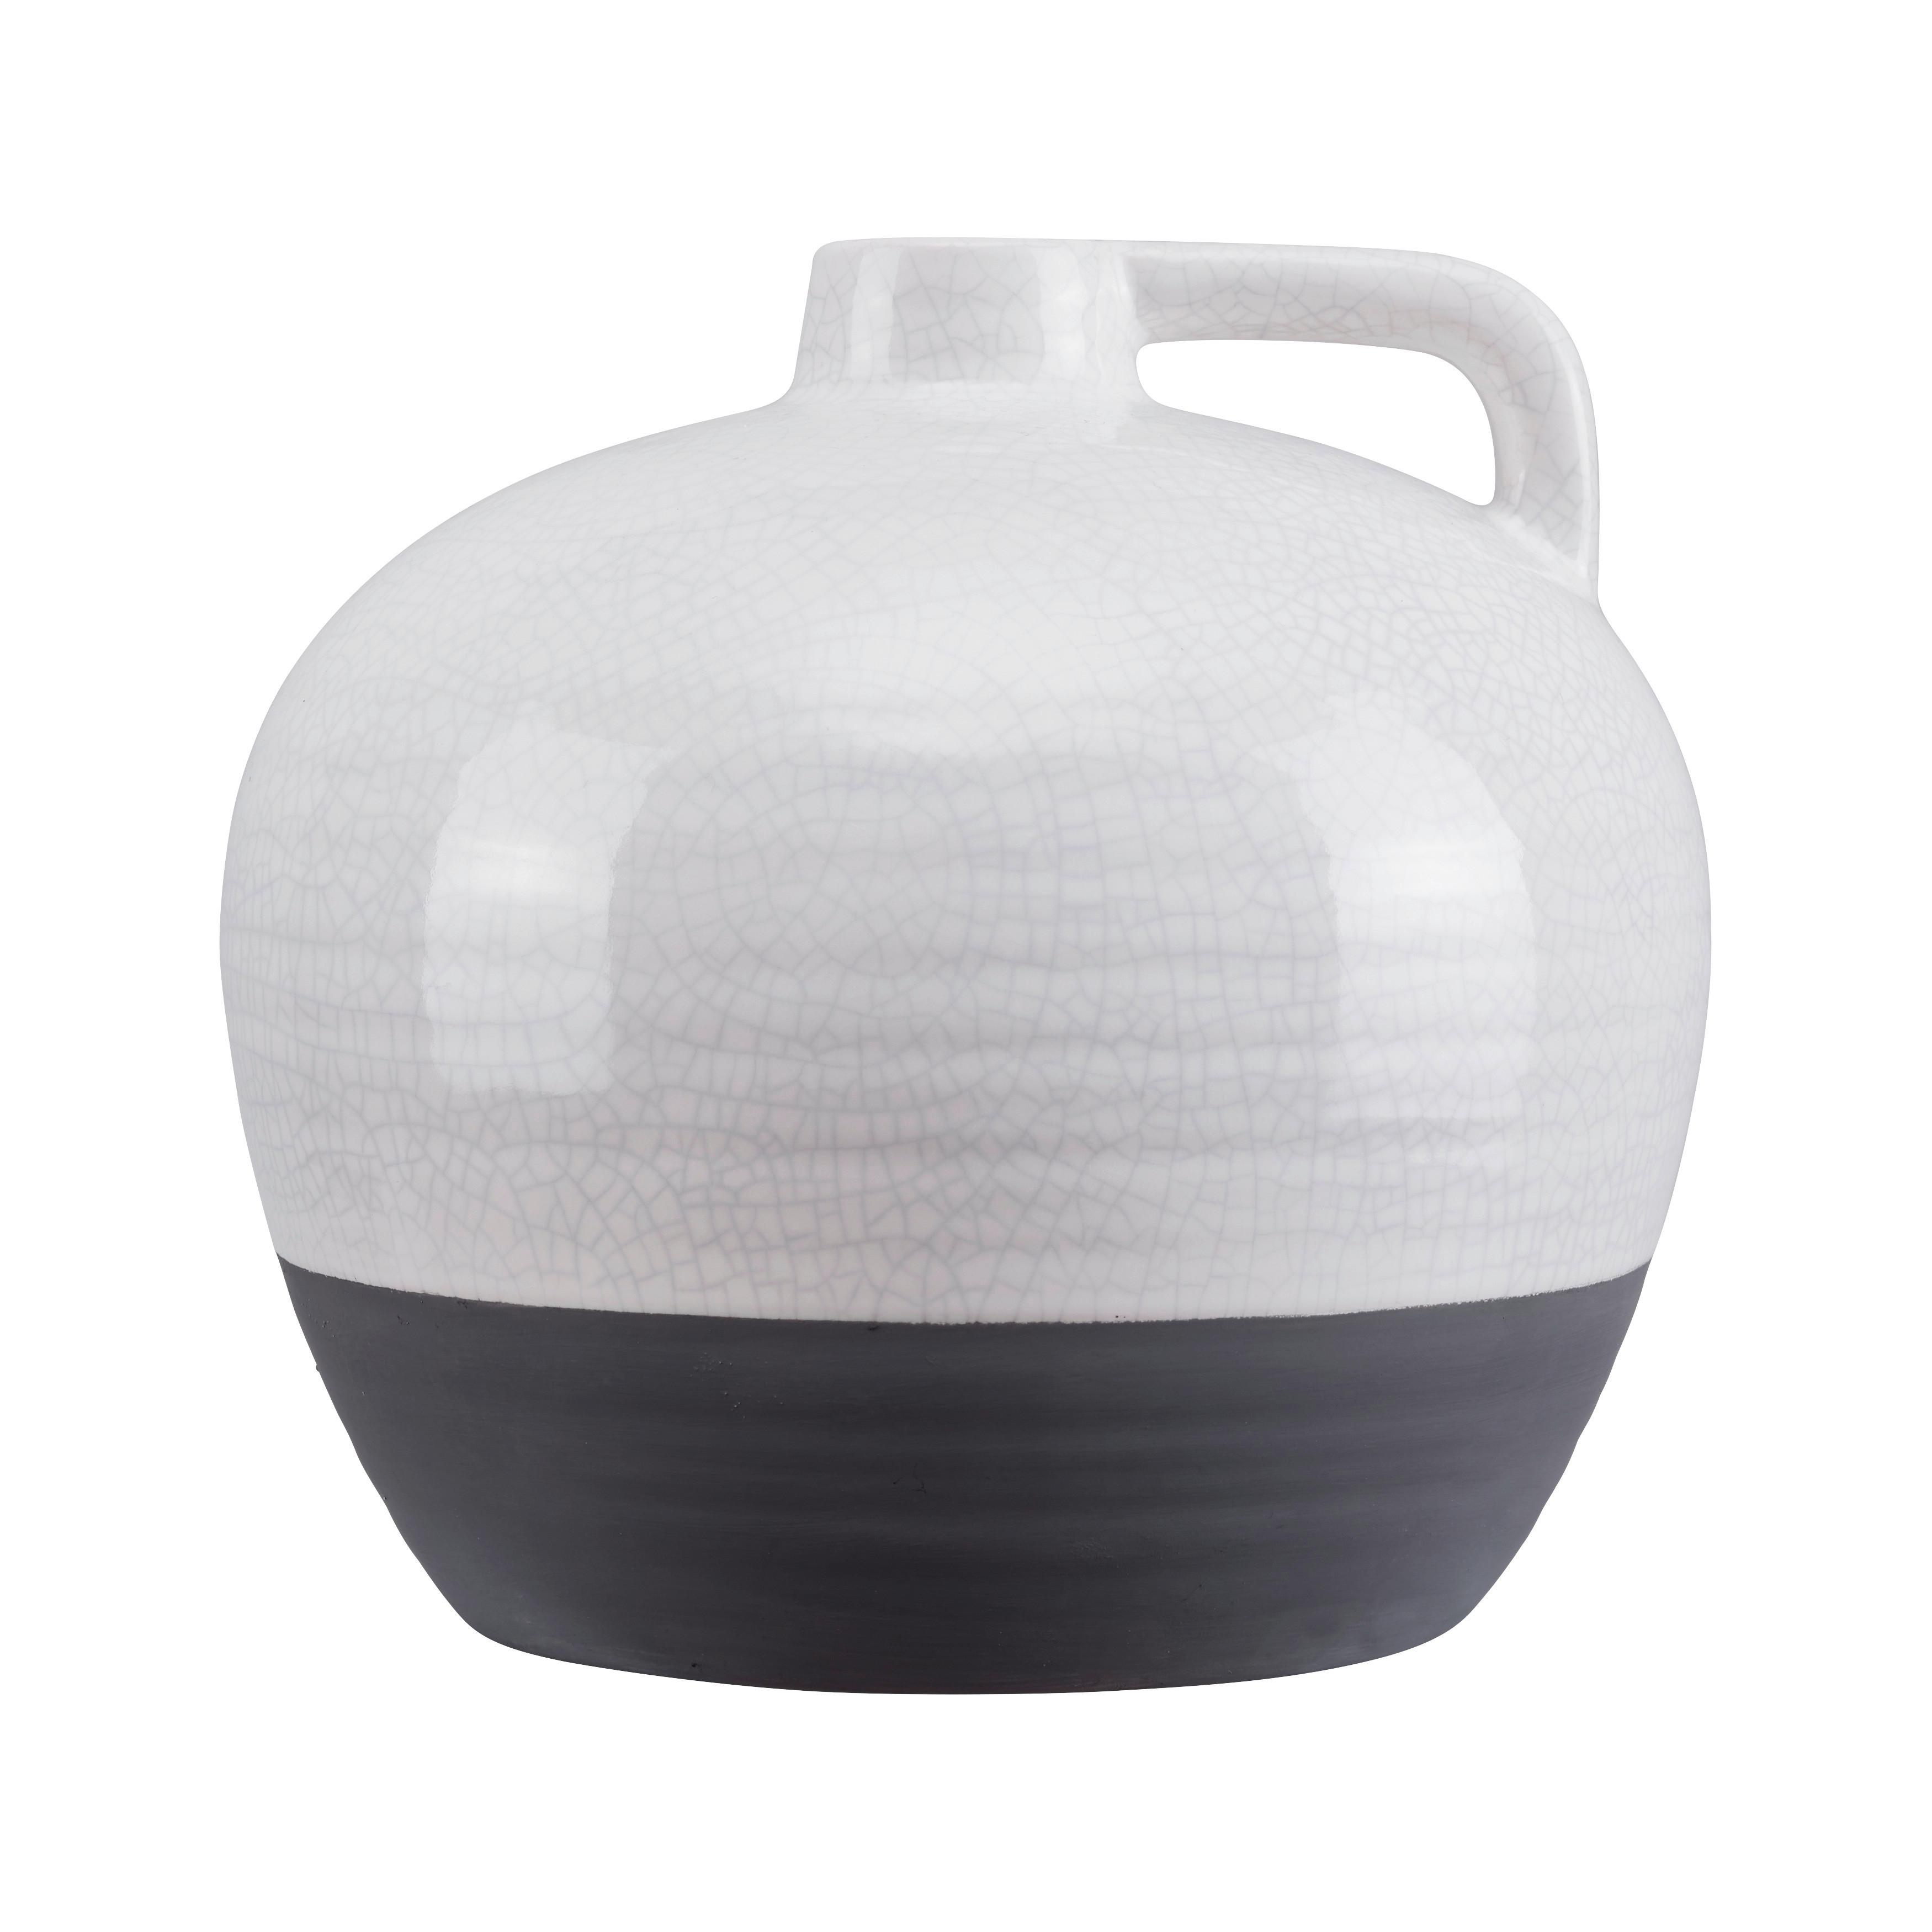 Vase Rezzo aus Steinzeug Ø ca. 22,5cm - Weiß/Grau, MODERN, Keramik (22,5/21cm) - Bessagi Home